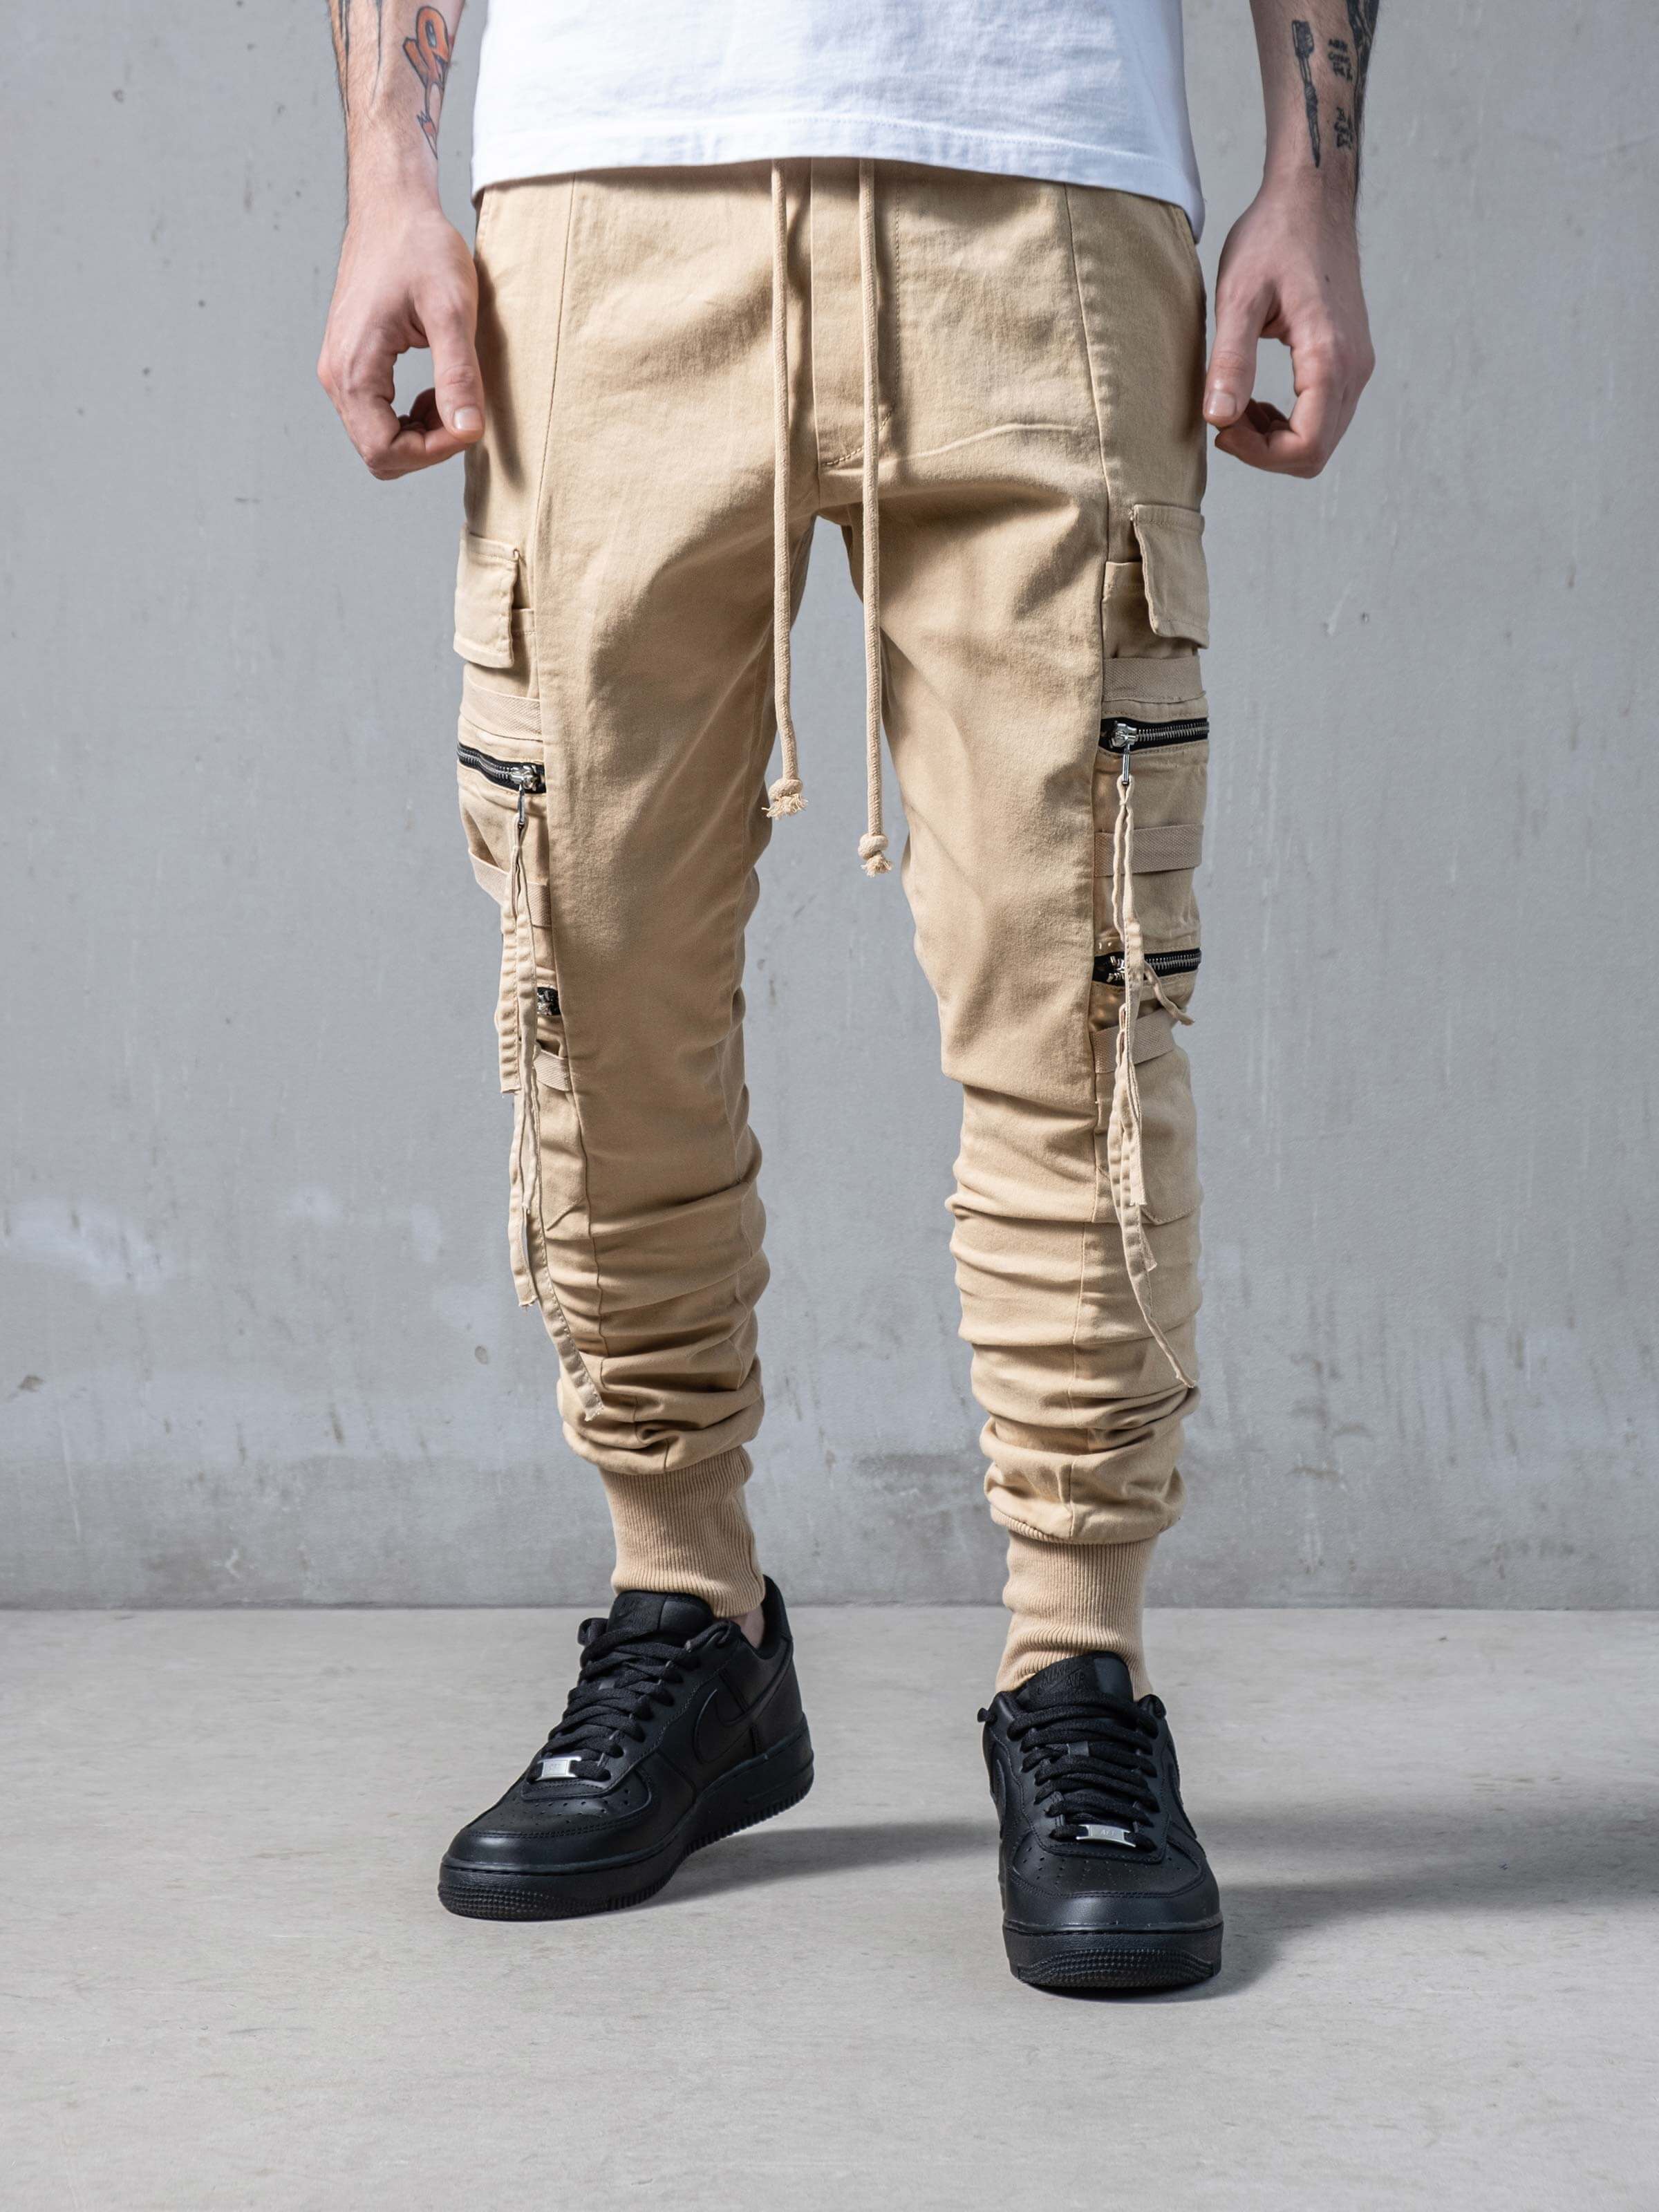 Beige Swish Cargo Pants | Men's Streetwear Cargo Pants | Monocloth ...